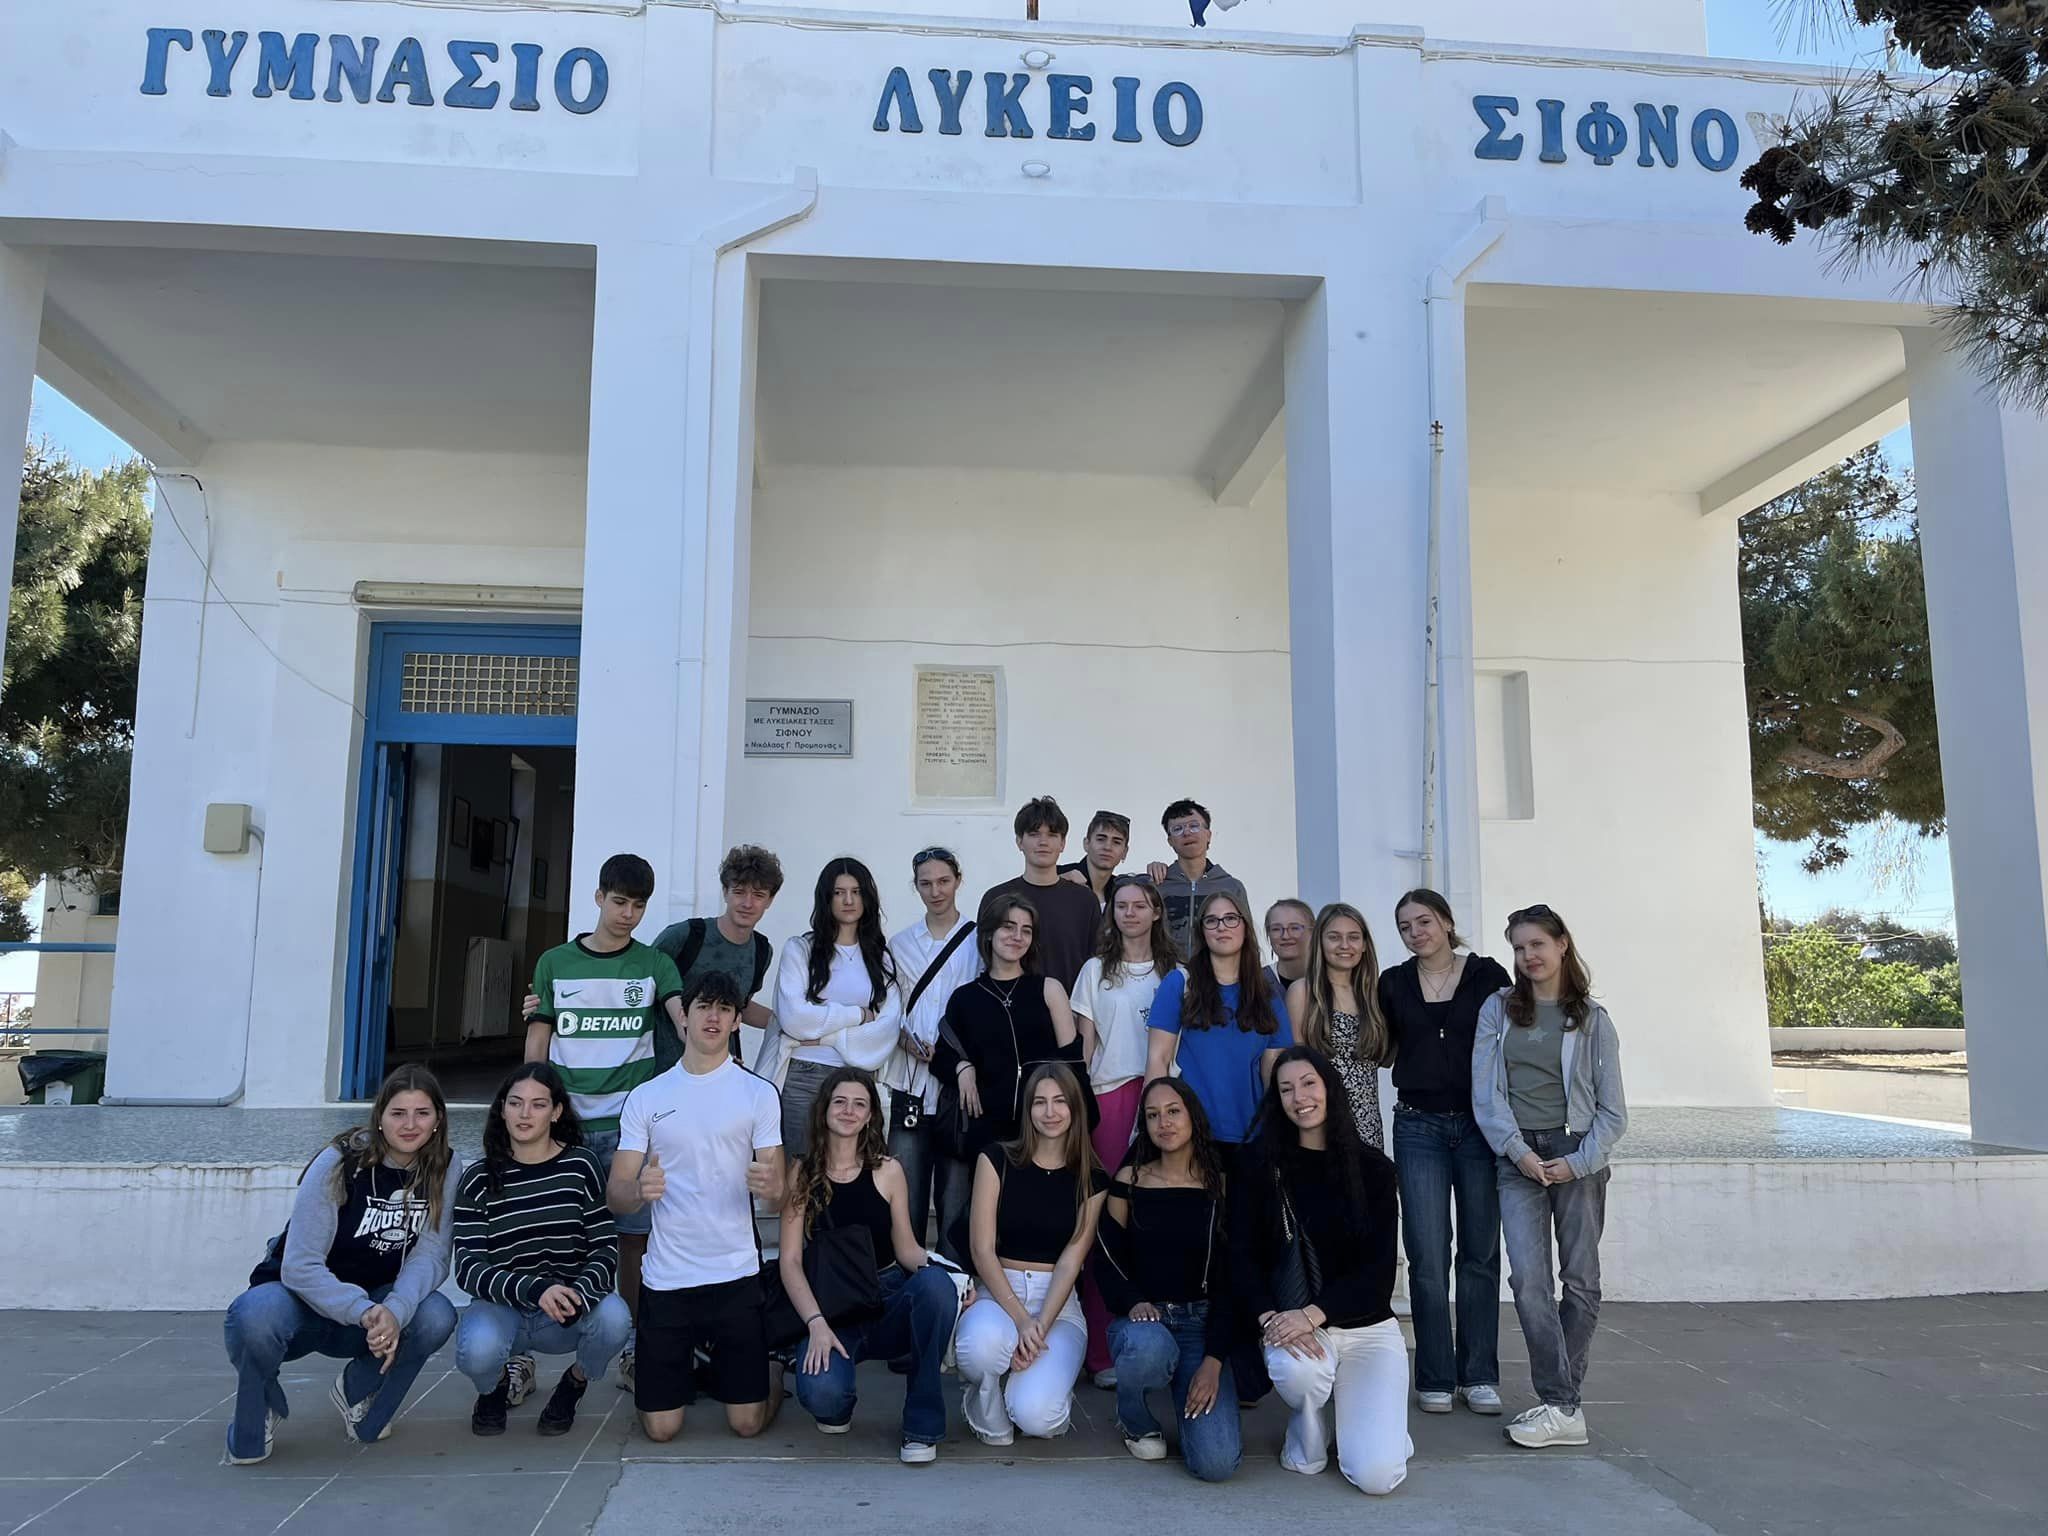 W dniach 14-21 kwietnia grupa 11 uczniów pod opieką p. Agnieszki Gemborys i p. Katarzyny Ścisłowicz spędziła wspaniałe chwile w Grecji na pięknej wyspie Sifnos. Wyjazd odbył się w ramach projektu Erasmus+ „Troskliwa Szkoła - Zjednoczeni w Różnorodności,”, zdjęcie grupowe przed budynkiem szkoły